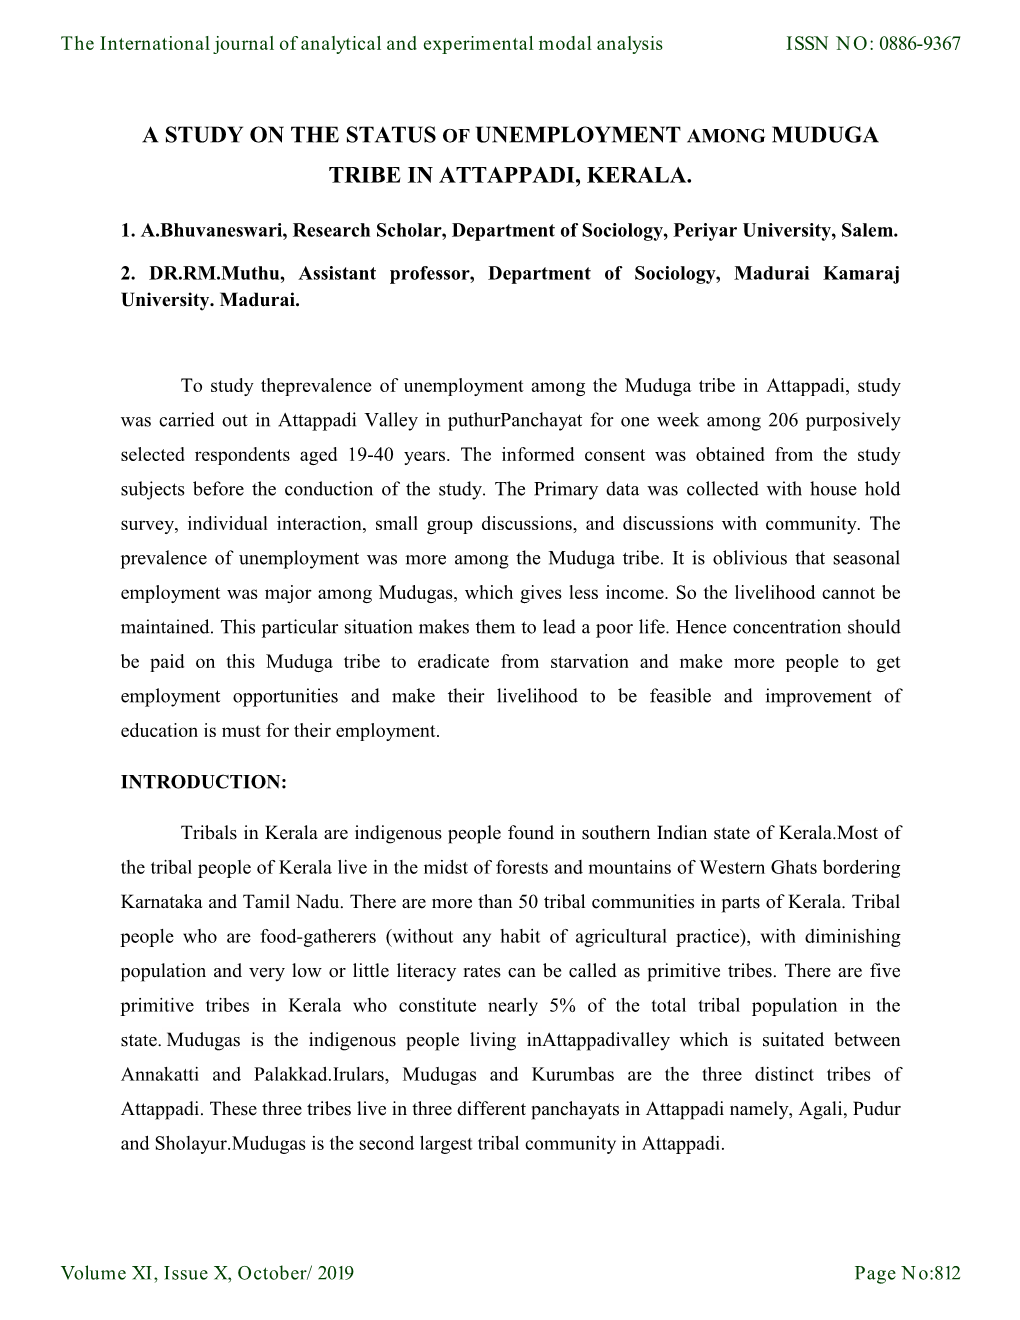 A Study on the Status of Unemployment Among Muduga Tribe in Attappadi, Kerala